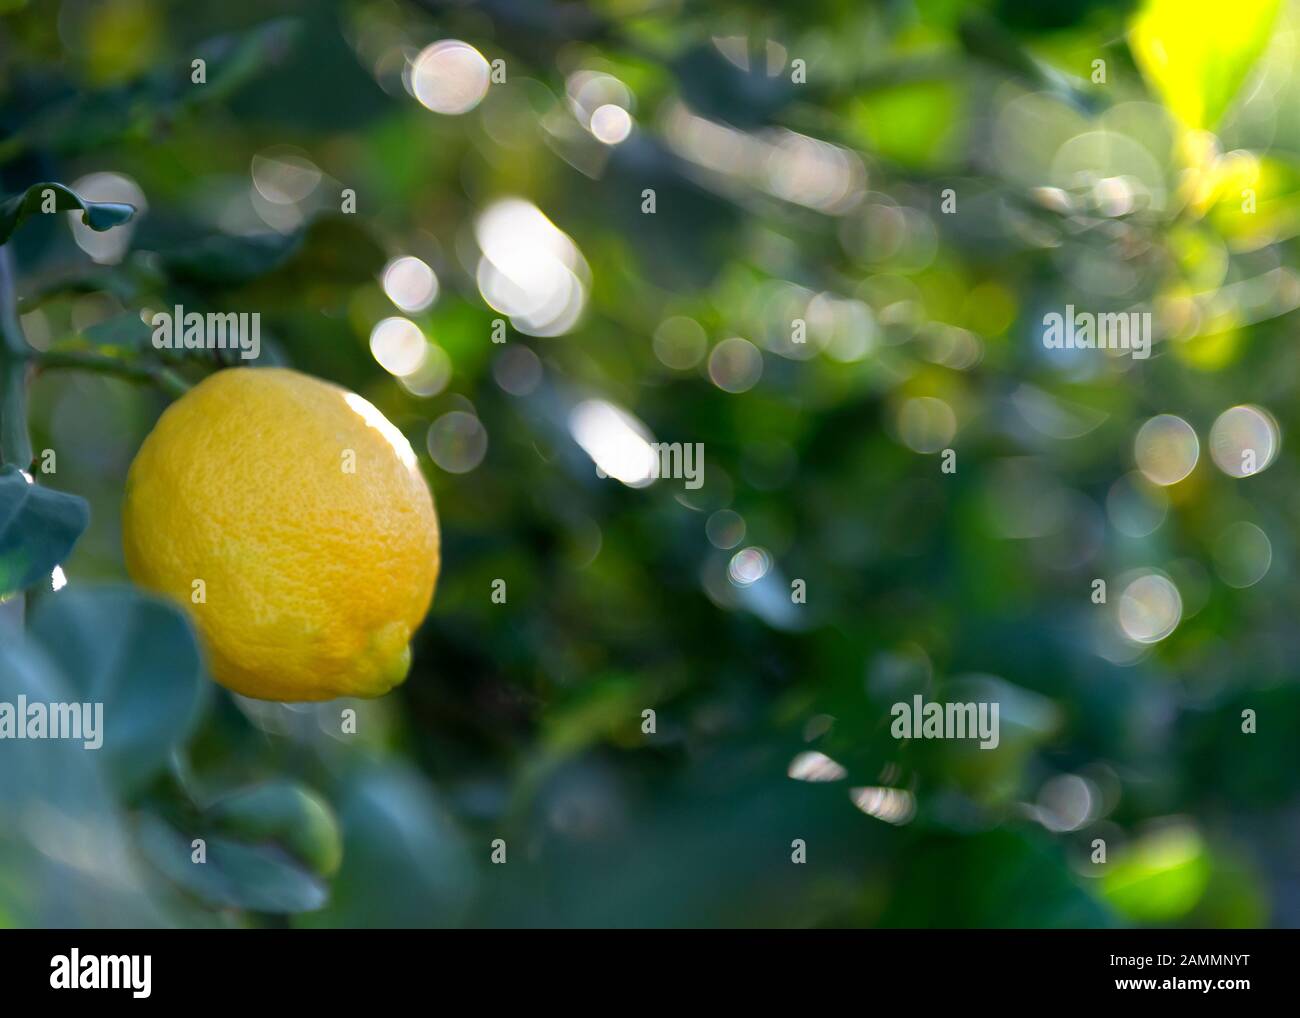 Aufnahme für Text und Text mit selektivem Fokus auf einer einzelnen Zitrone, die im Hintergrund die spanische Sonne ins Grün eindeißt Stockfoto